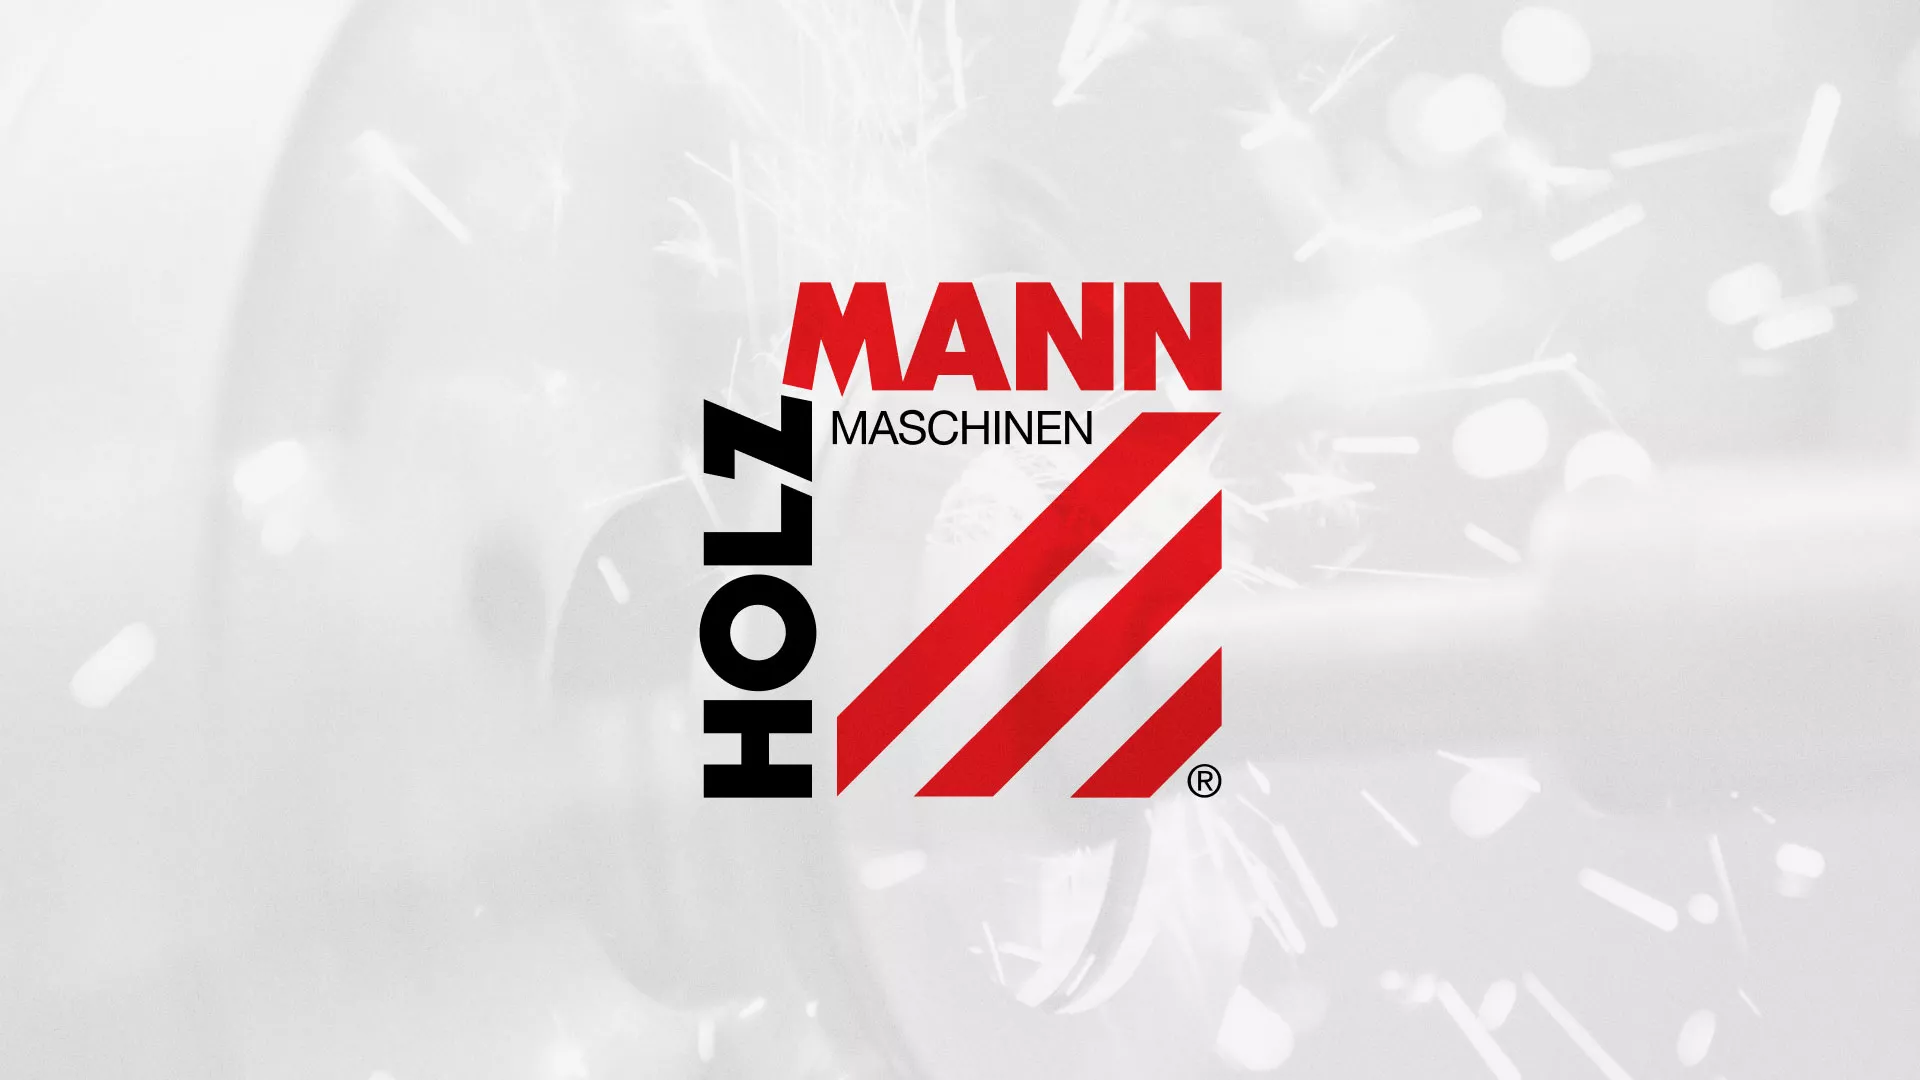 Создание сайта компании «HOLZMANN Maschinen GmbH» в Светлогорске